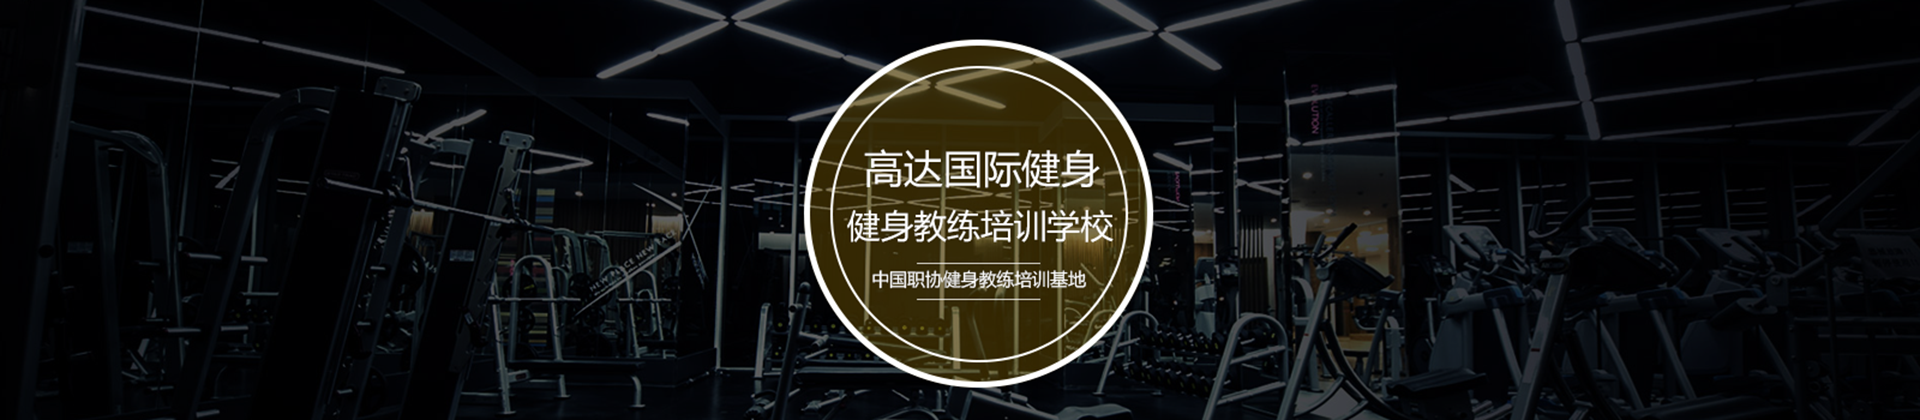 北京高达国际健身学院